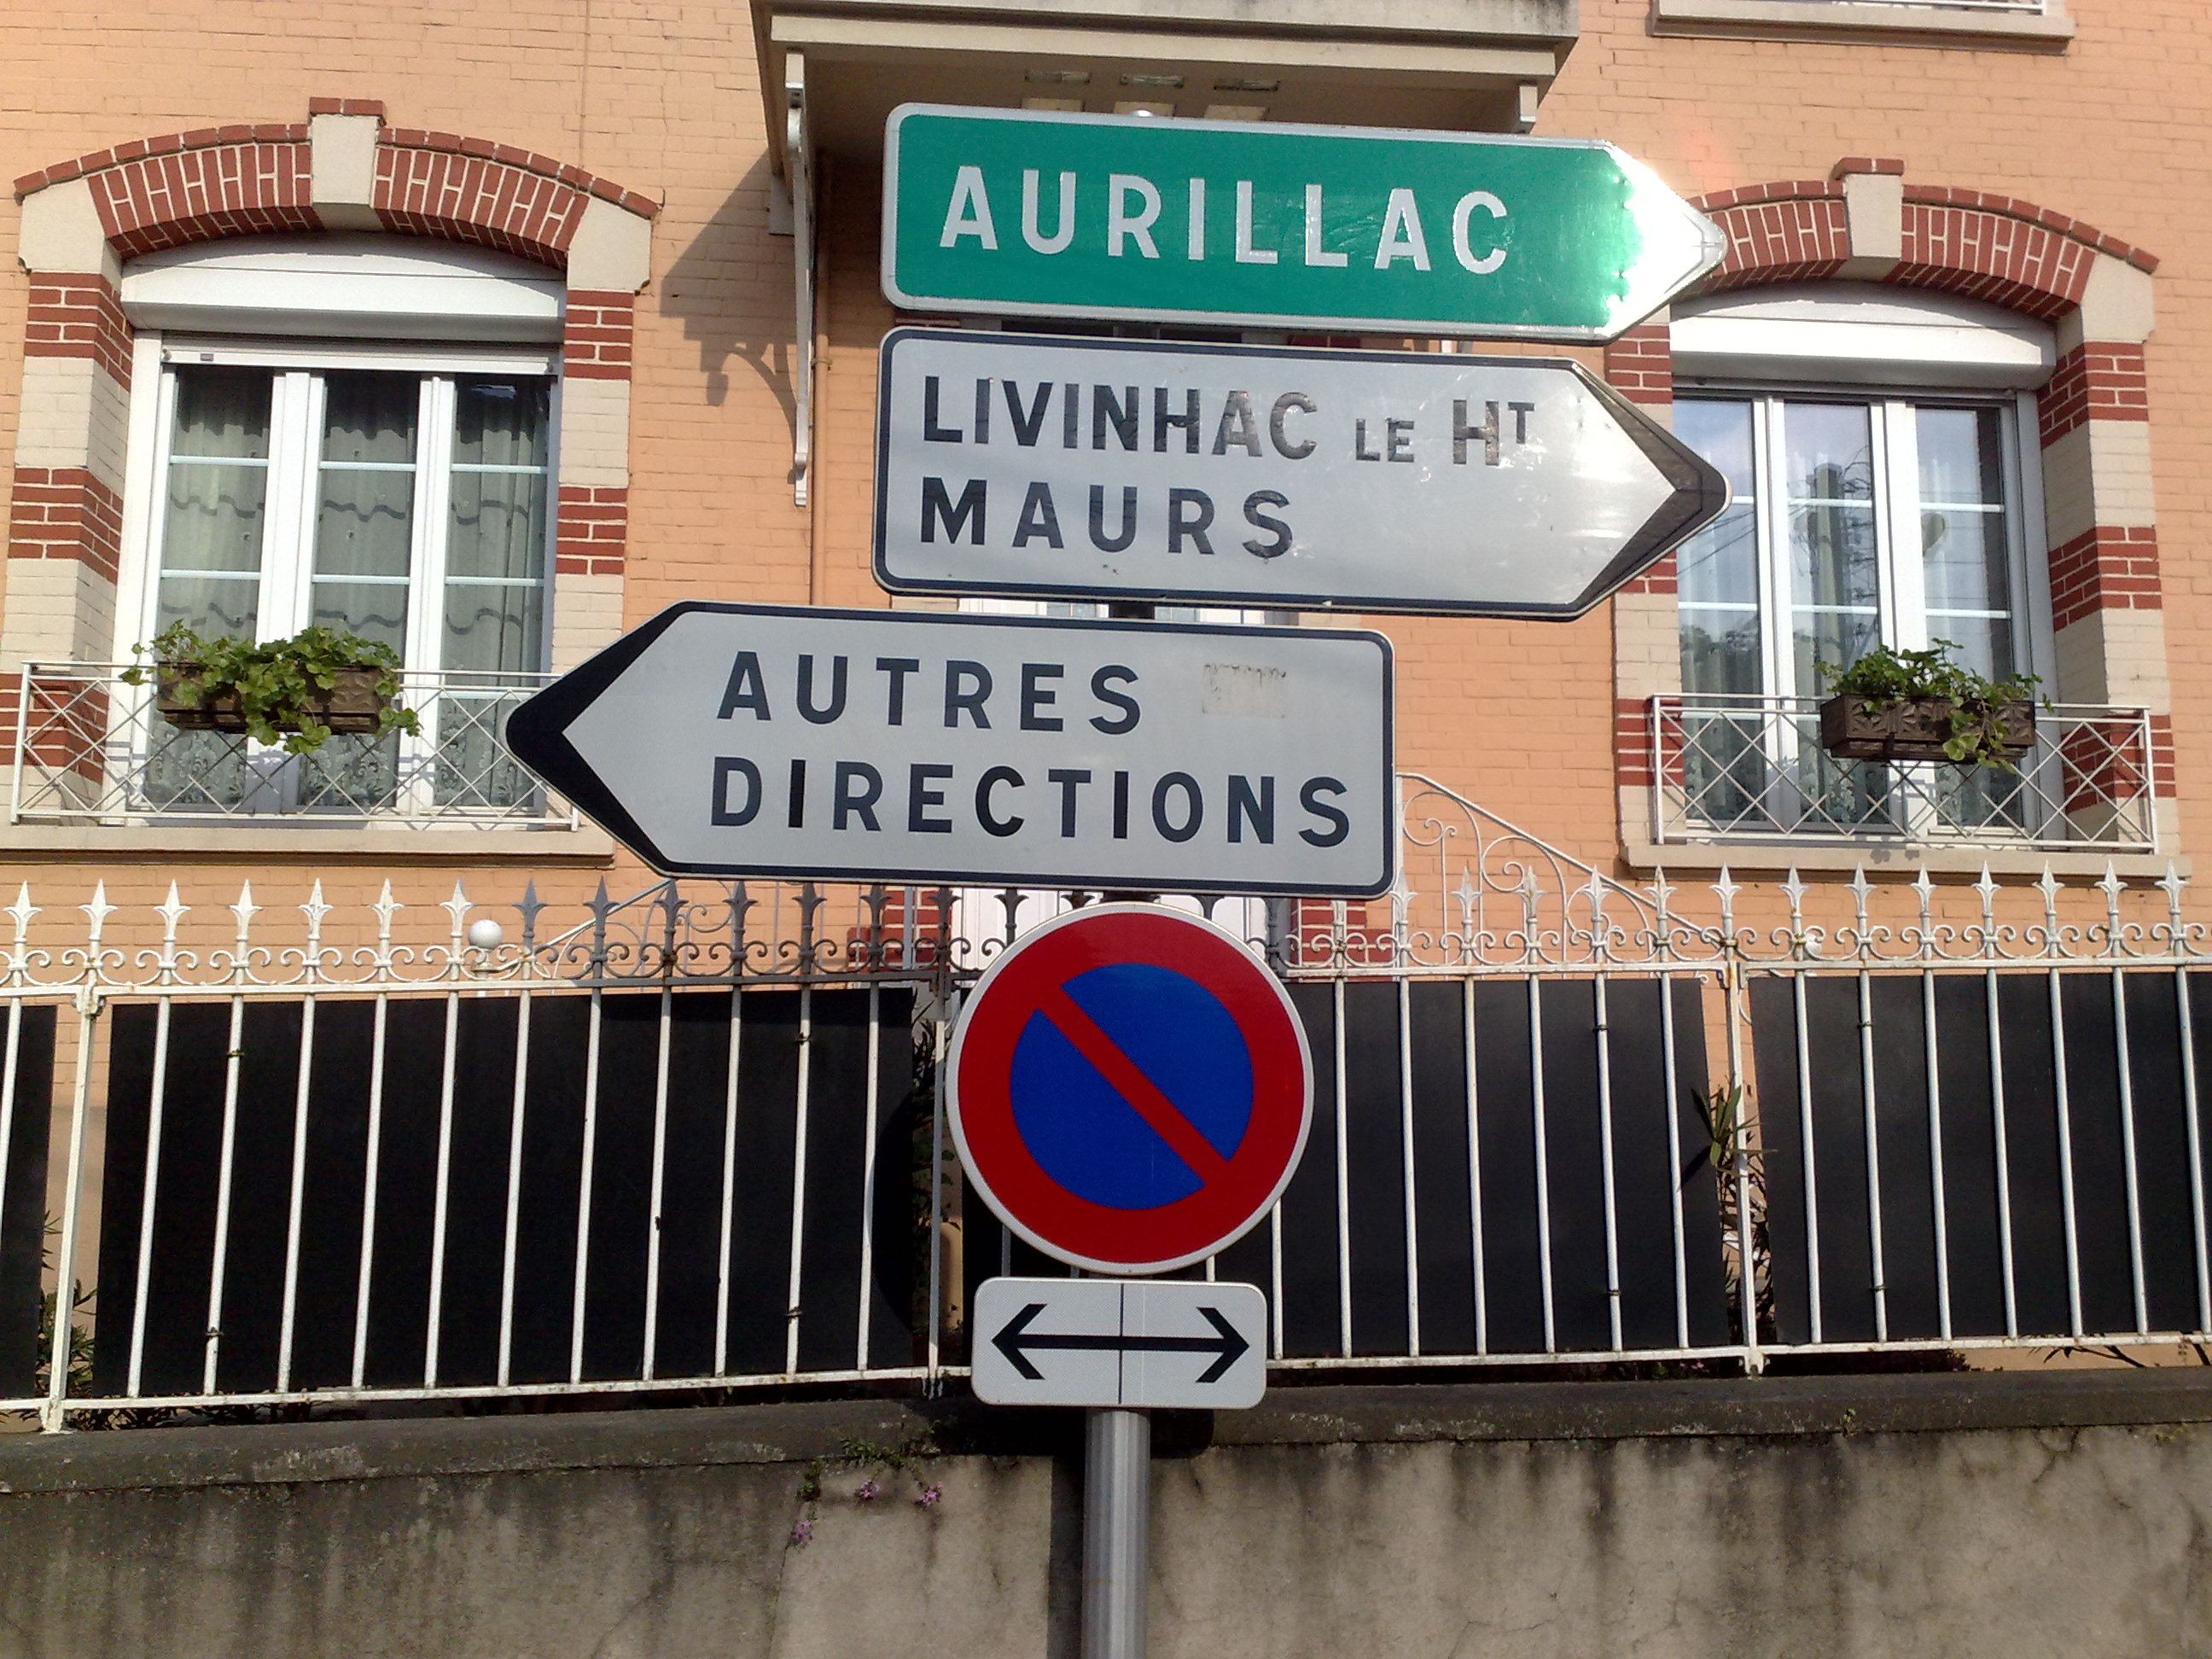 Aurillac, Livinhac og Maurs: Den retningen. Den andre retningen: Andre retningar. Bombe.